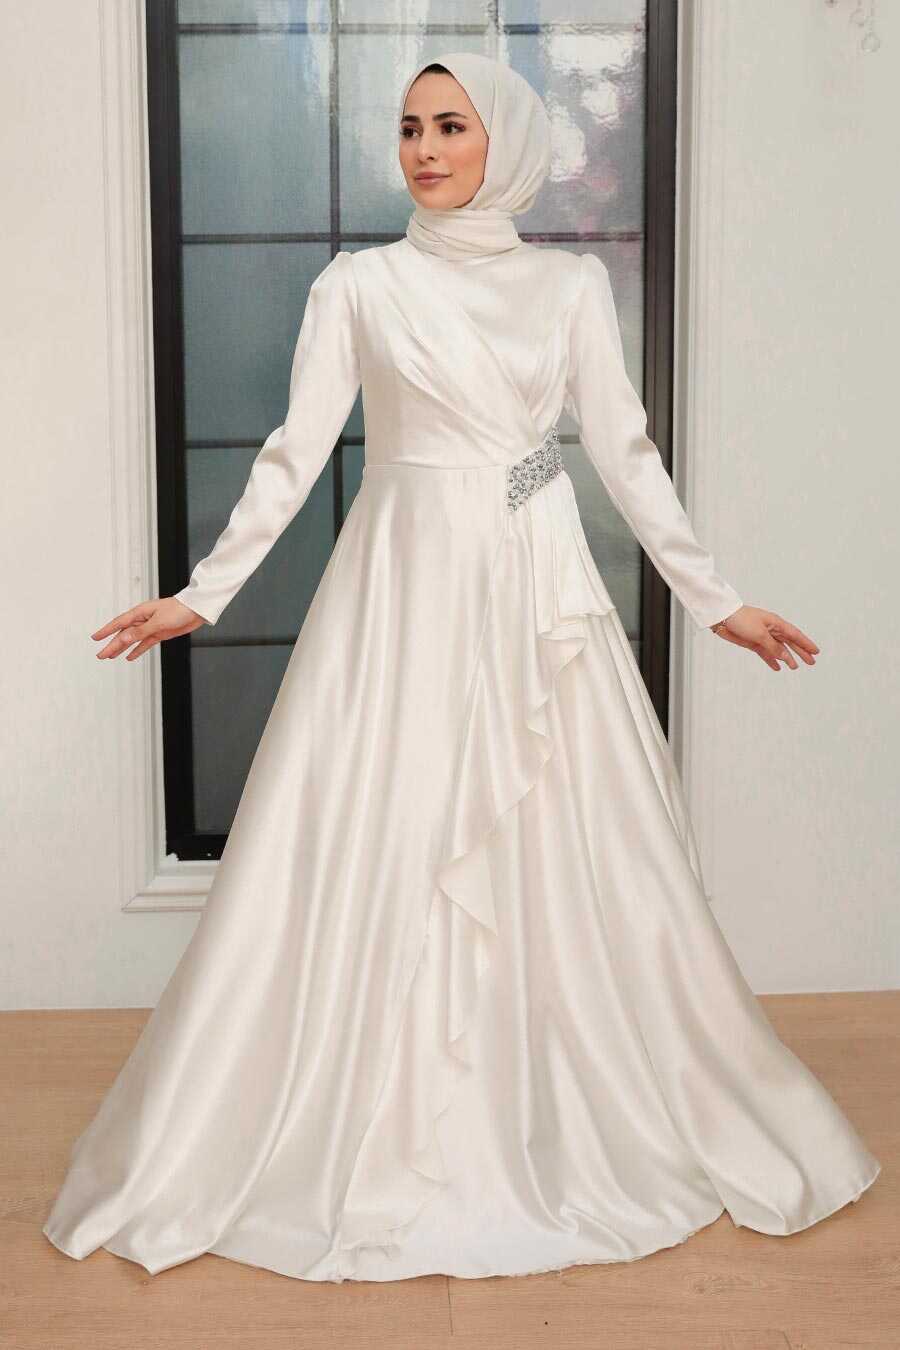 50 Muslim Wedding Dresses - Bride & Groom (updated)